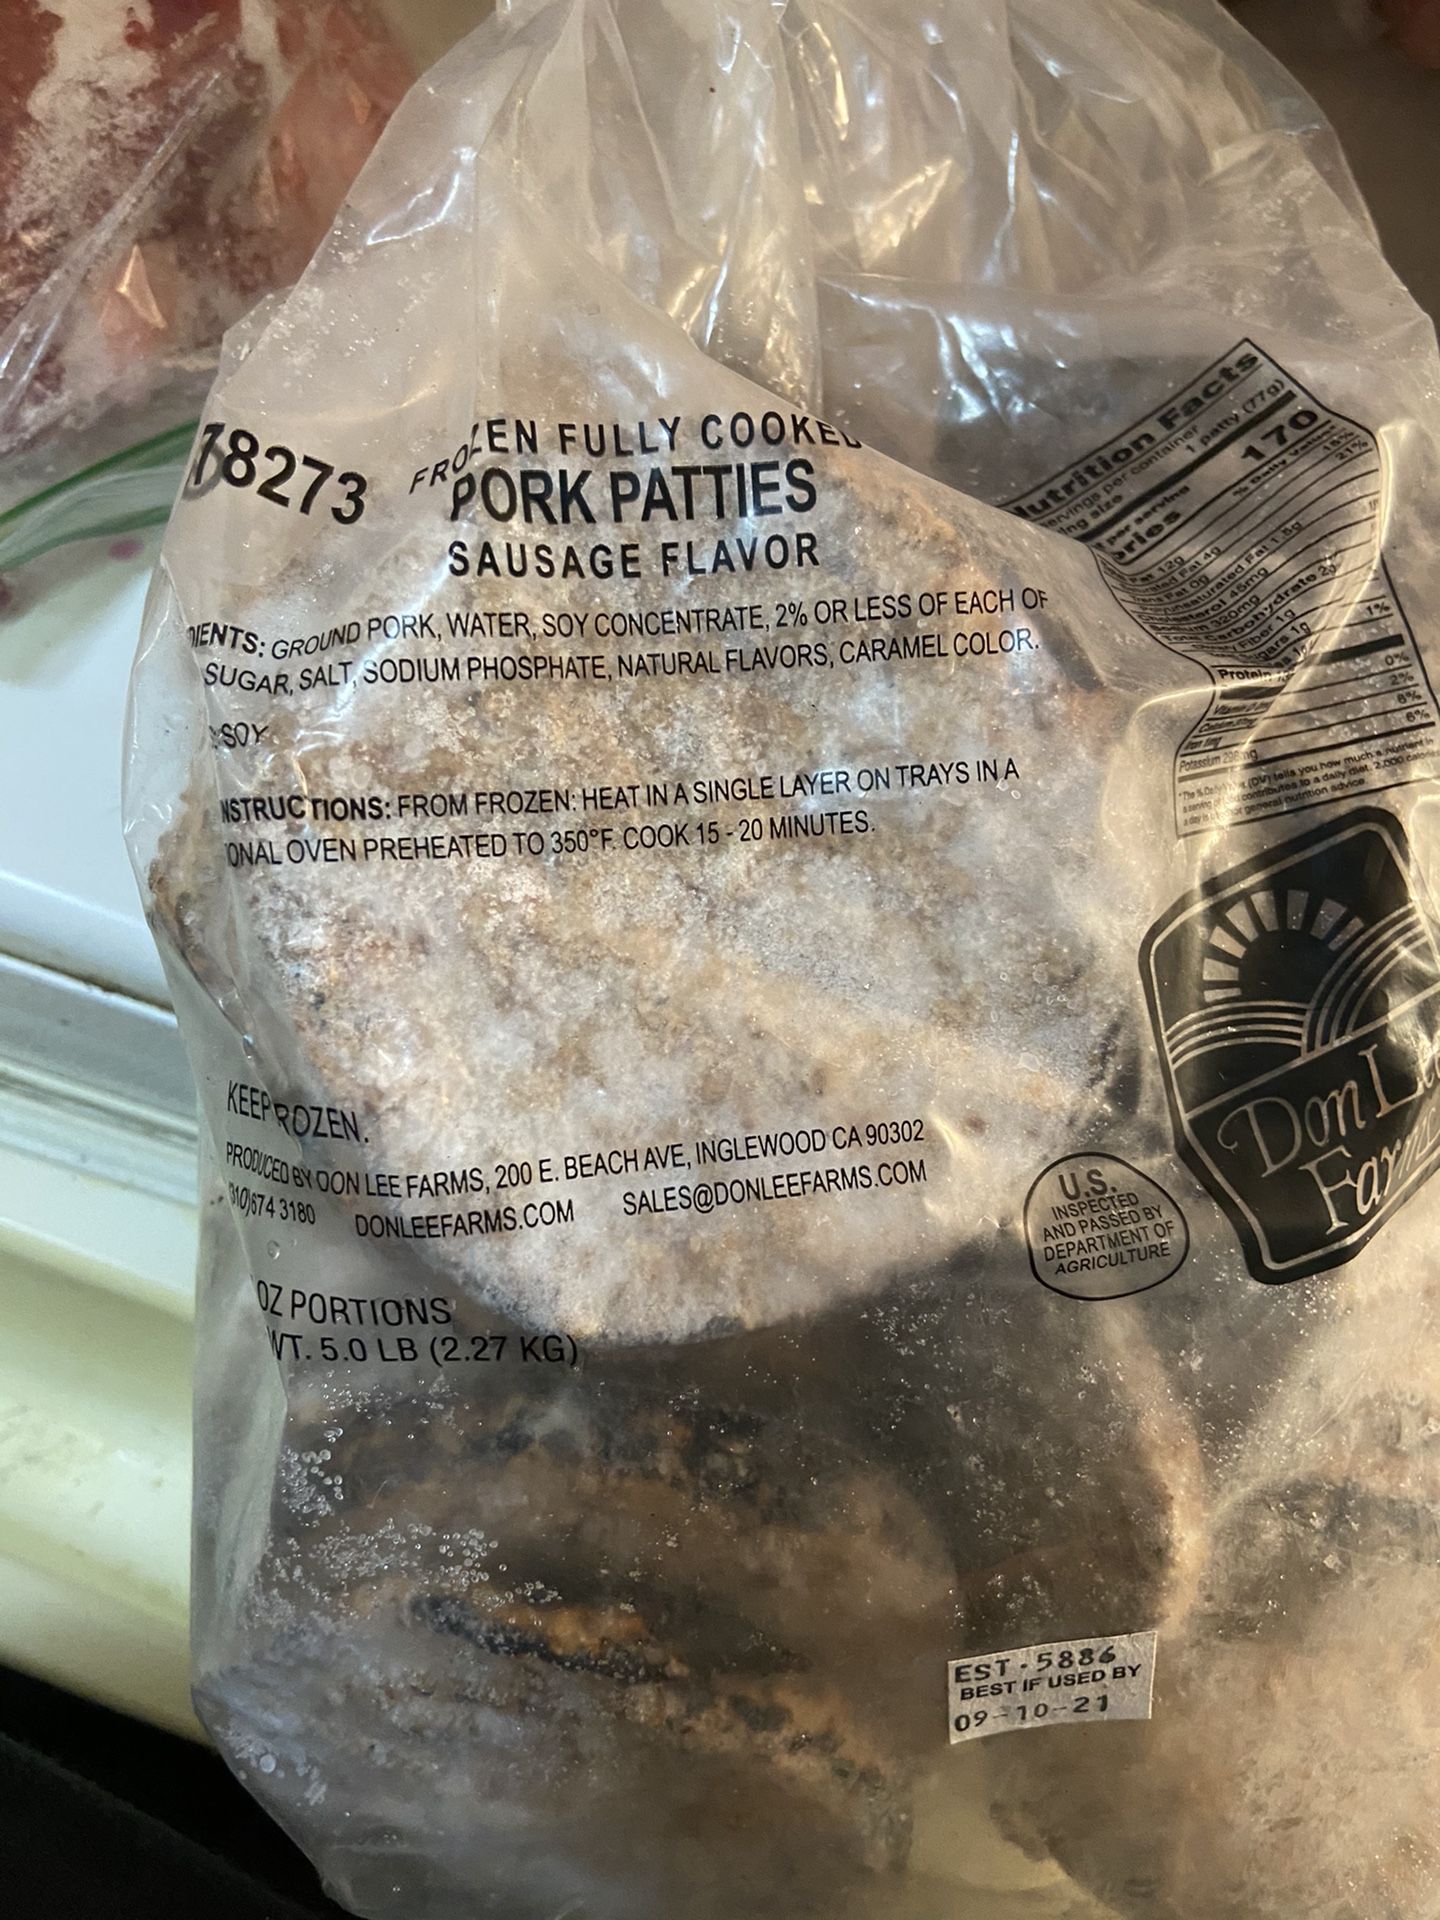 Free pork patties